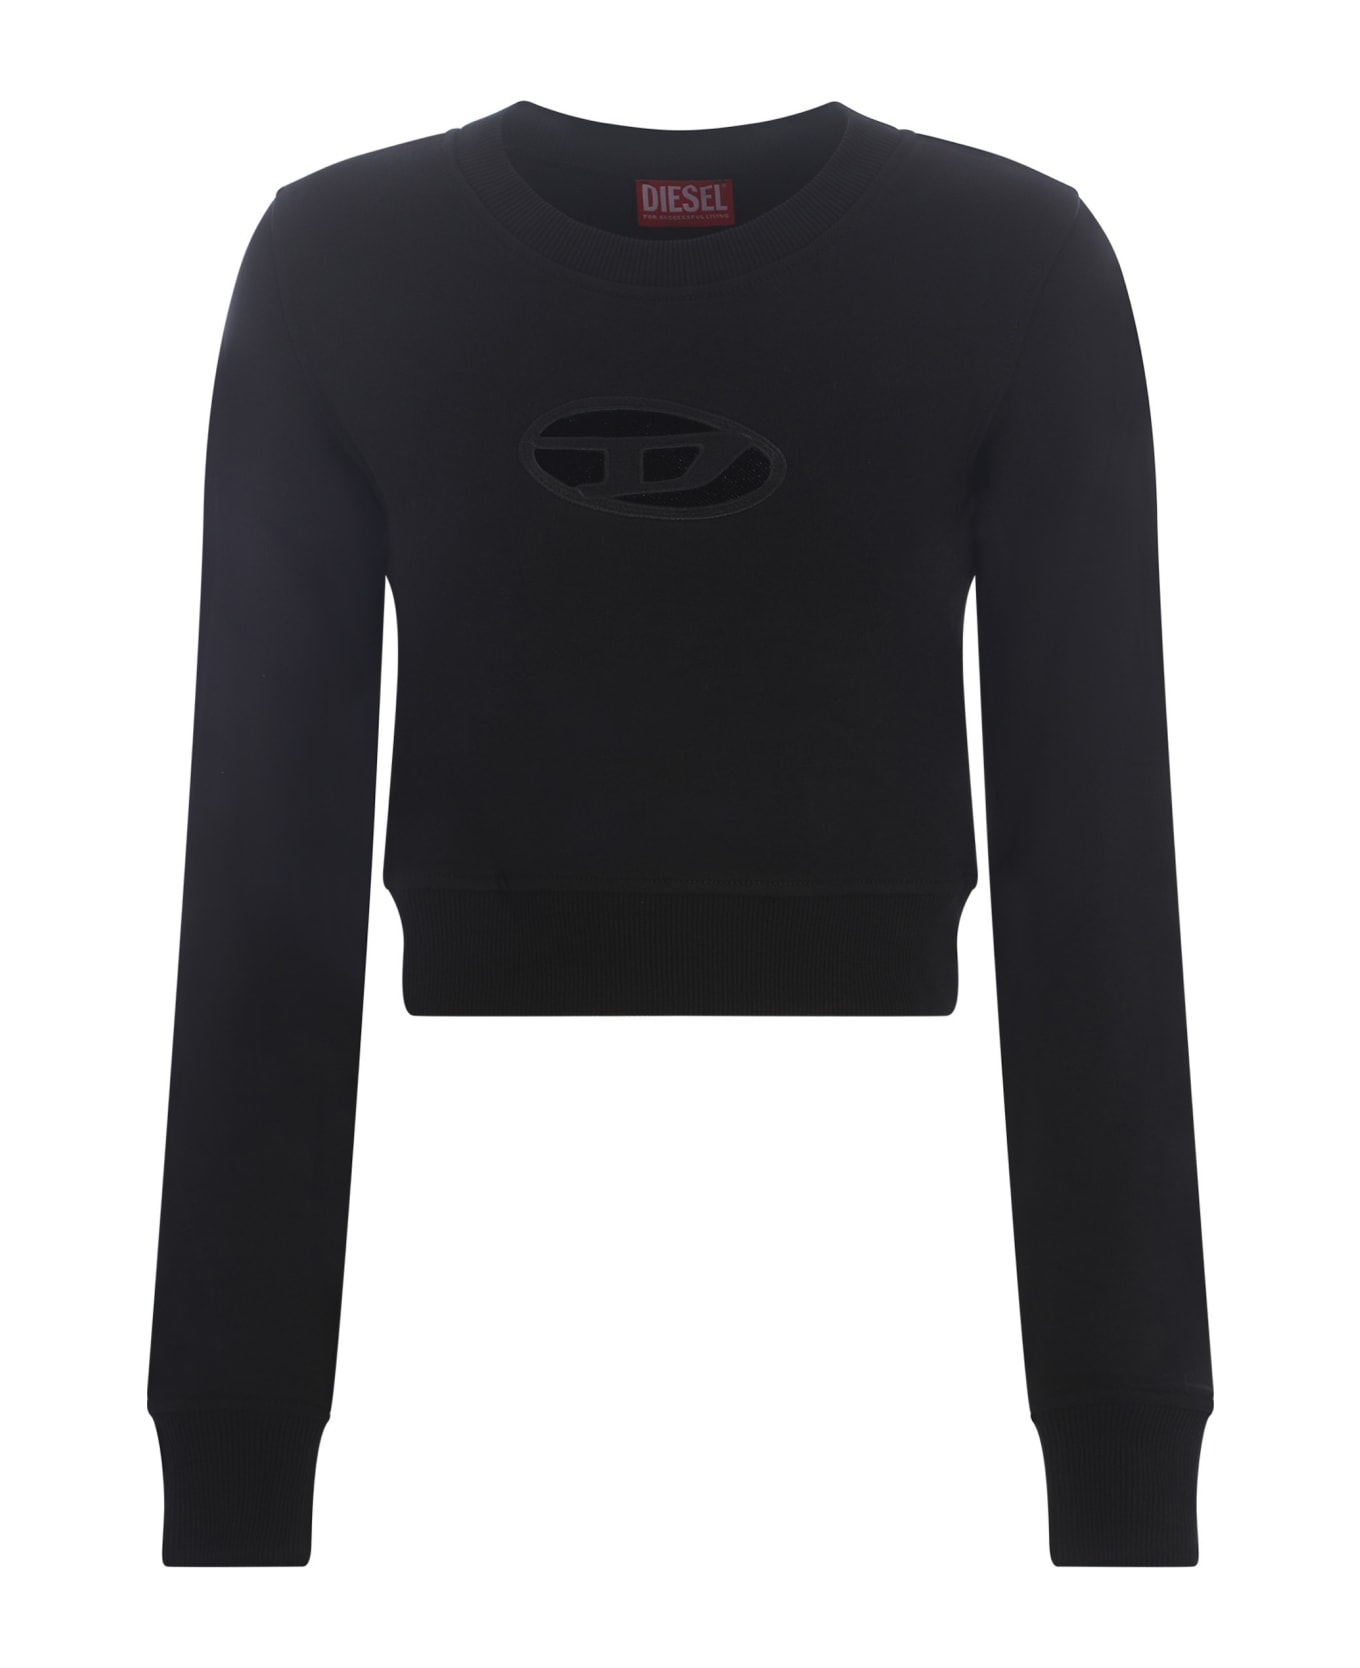 Diesel F-slimmy Cropped Sweatshirt - Black